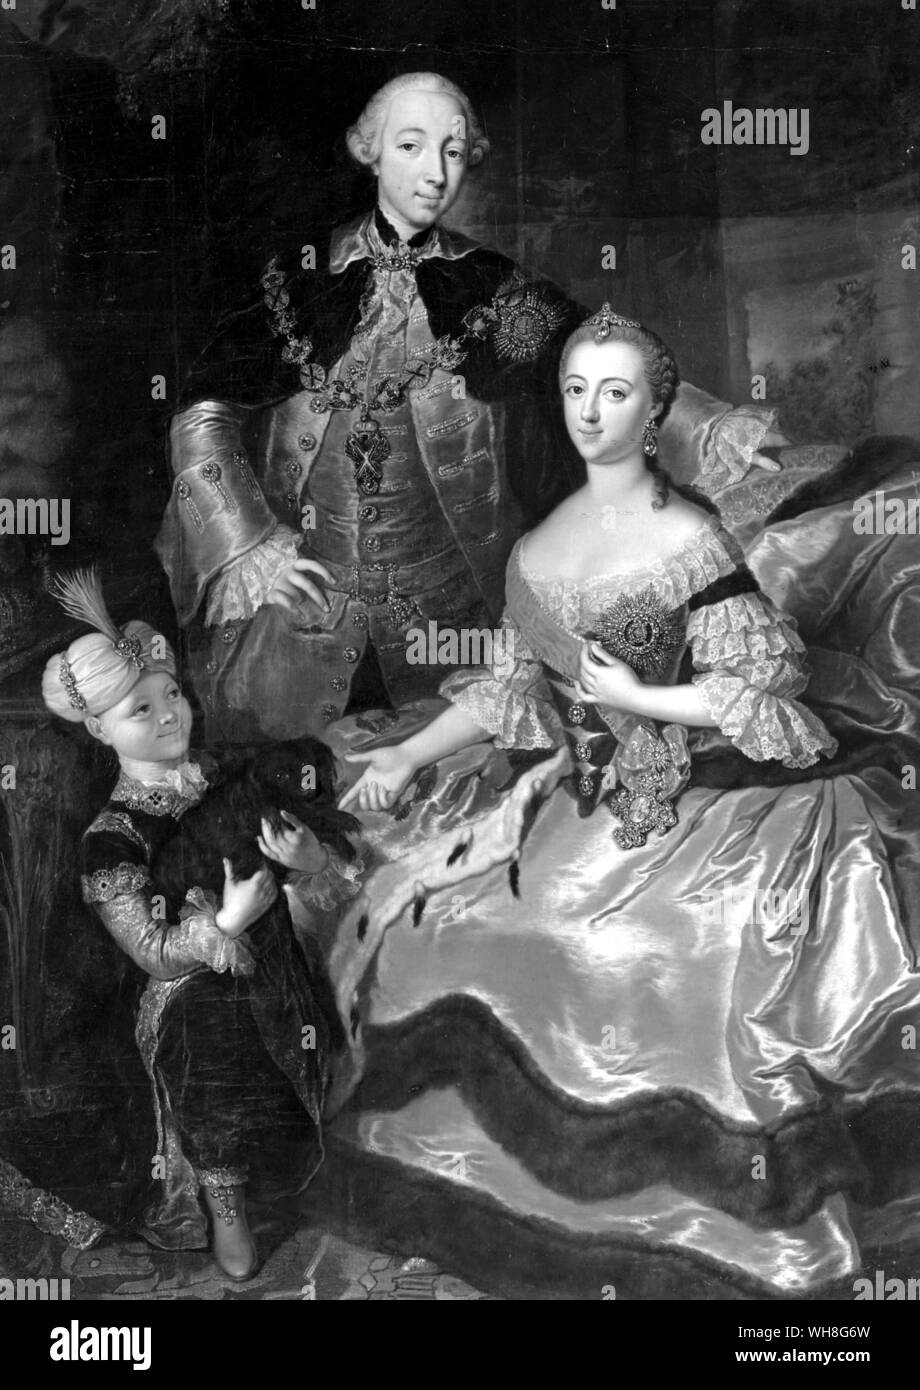 Peter III comme l'héritier du trône, peint avec son épouse Catherine et Paul. Le Grand-duc Peter Fedorovich (1728-1762), est devenu Peter III, empereur de Russie, en 1762. Les Romanov par Virginia Cowles, page 82. Banque D'Images